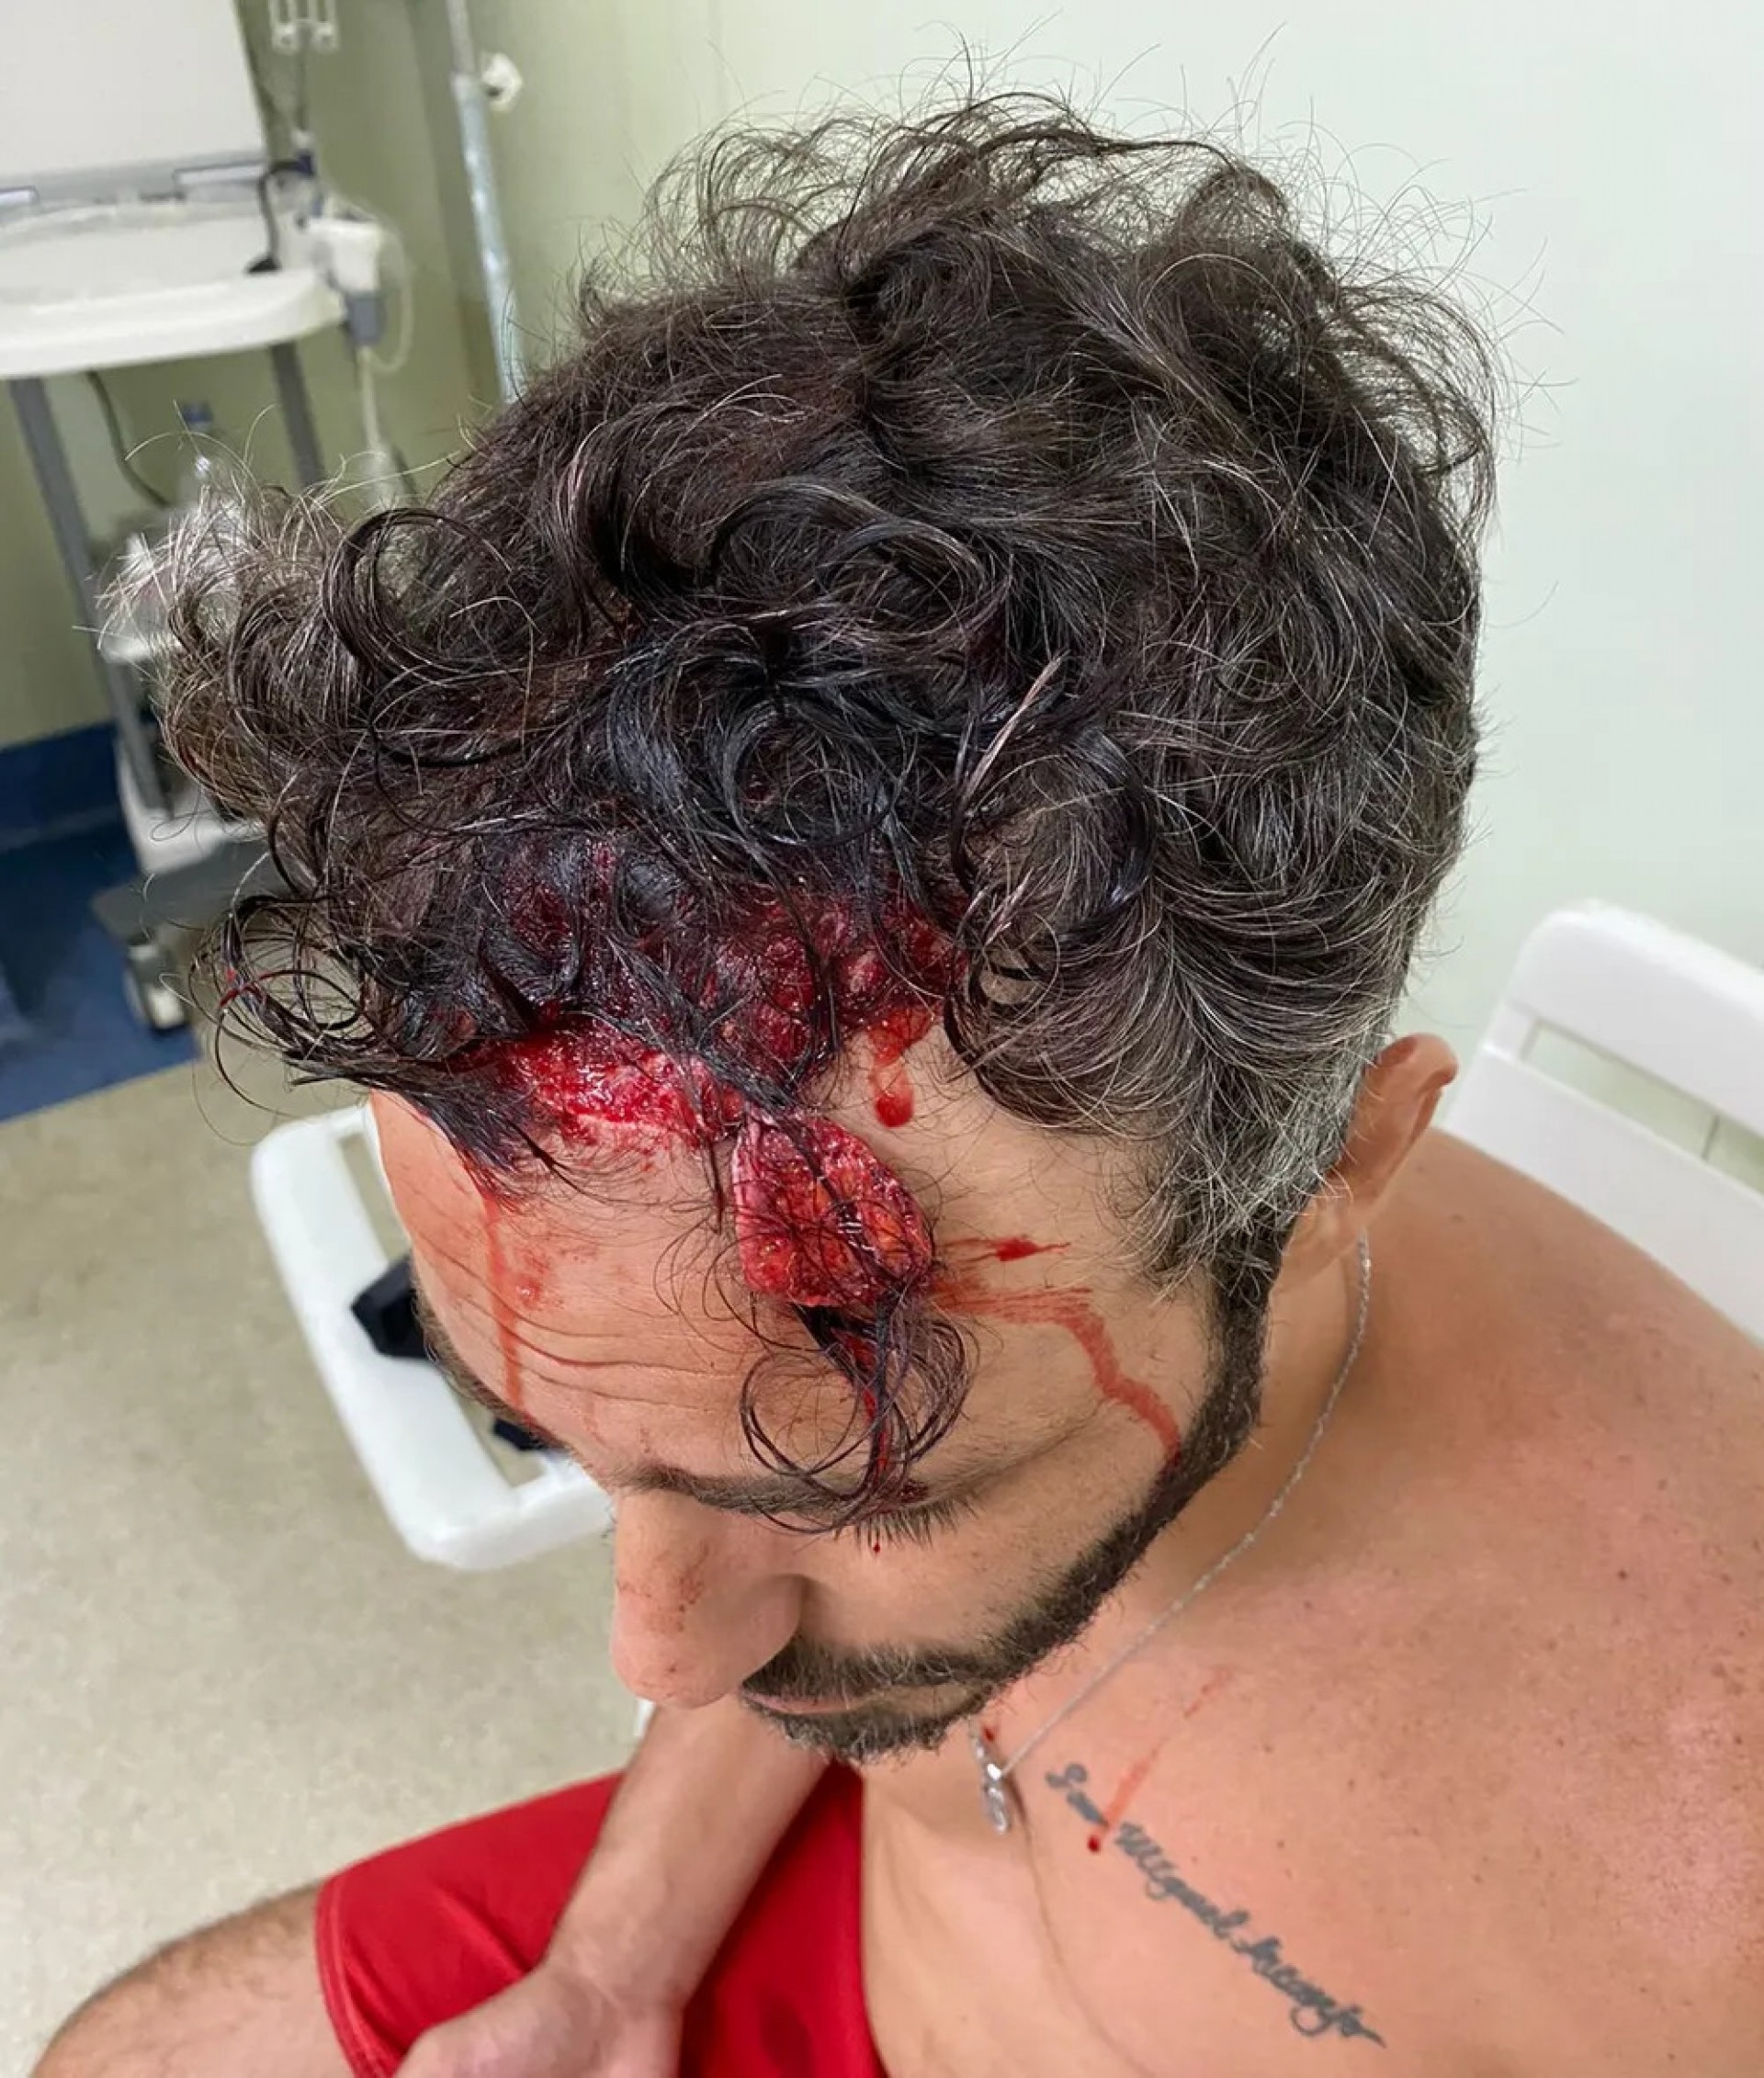 Thiago Rodrigues sofreu ferimentos na cabeça após ter sido espancado pelos assaltantes, na noite deste sábado, 10, e ficar desacordado